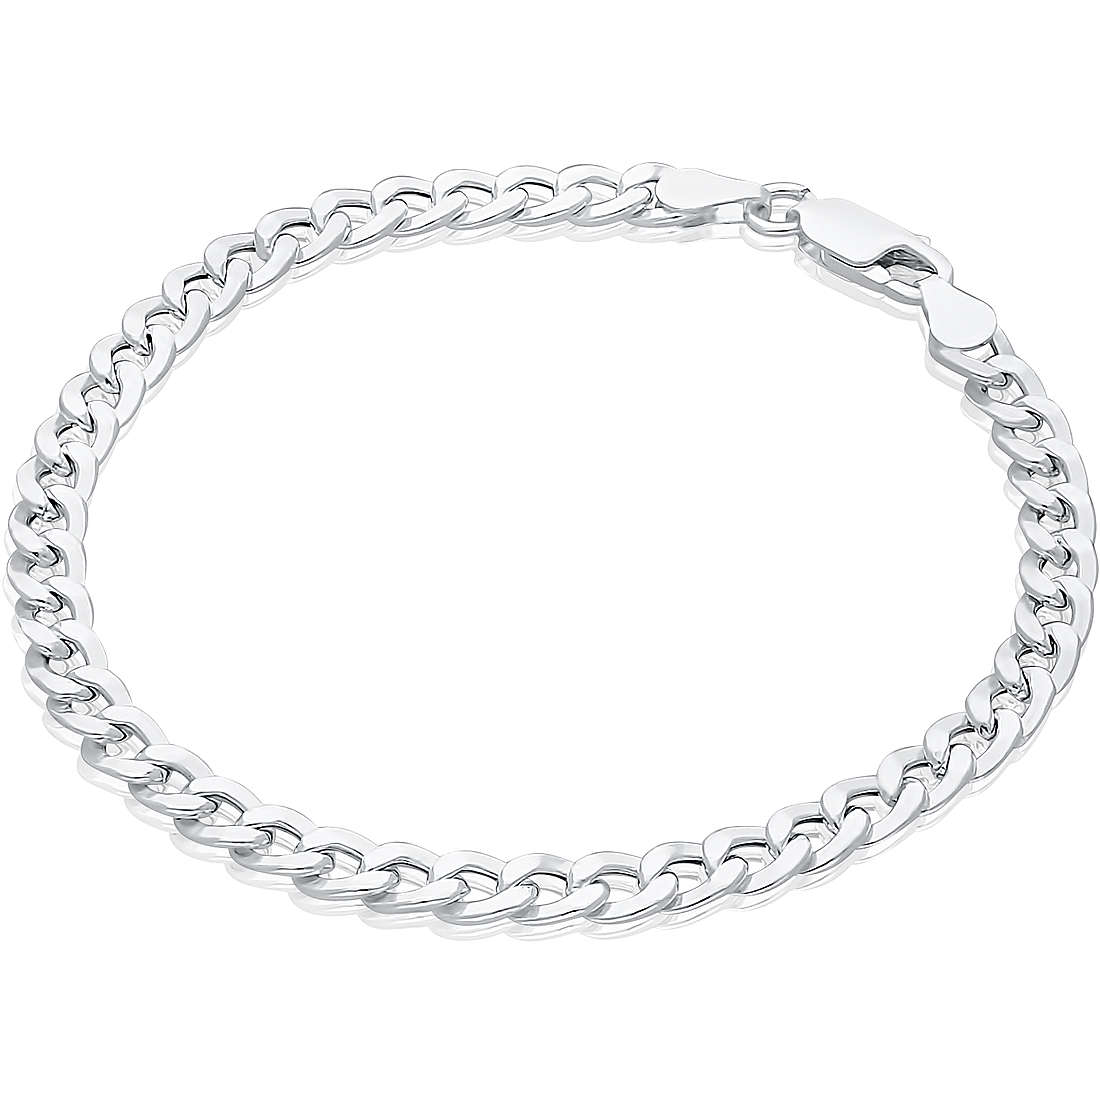 bracelet woman Chain 925 Silver jewel GioiaPura GYBARW0942-S